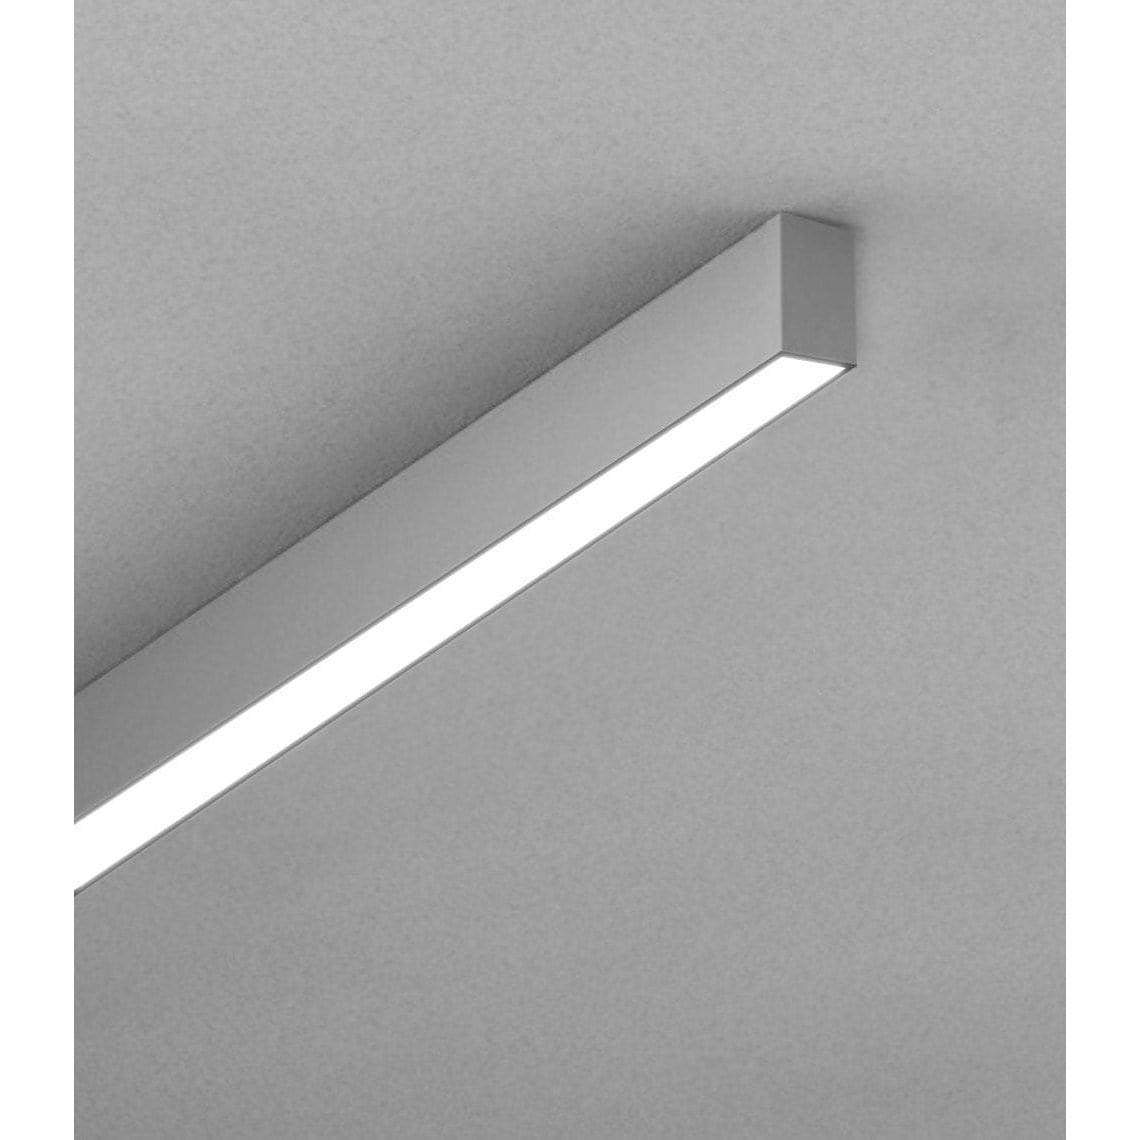 POE Texas Lighting Denton Suspended Linear PoE Lights - Sample 1.3" x 8' Linear Diffuser 8 ft, 3500K (Pendant)